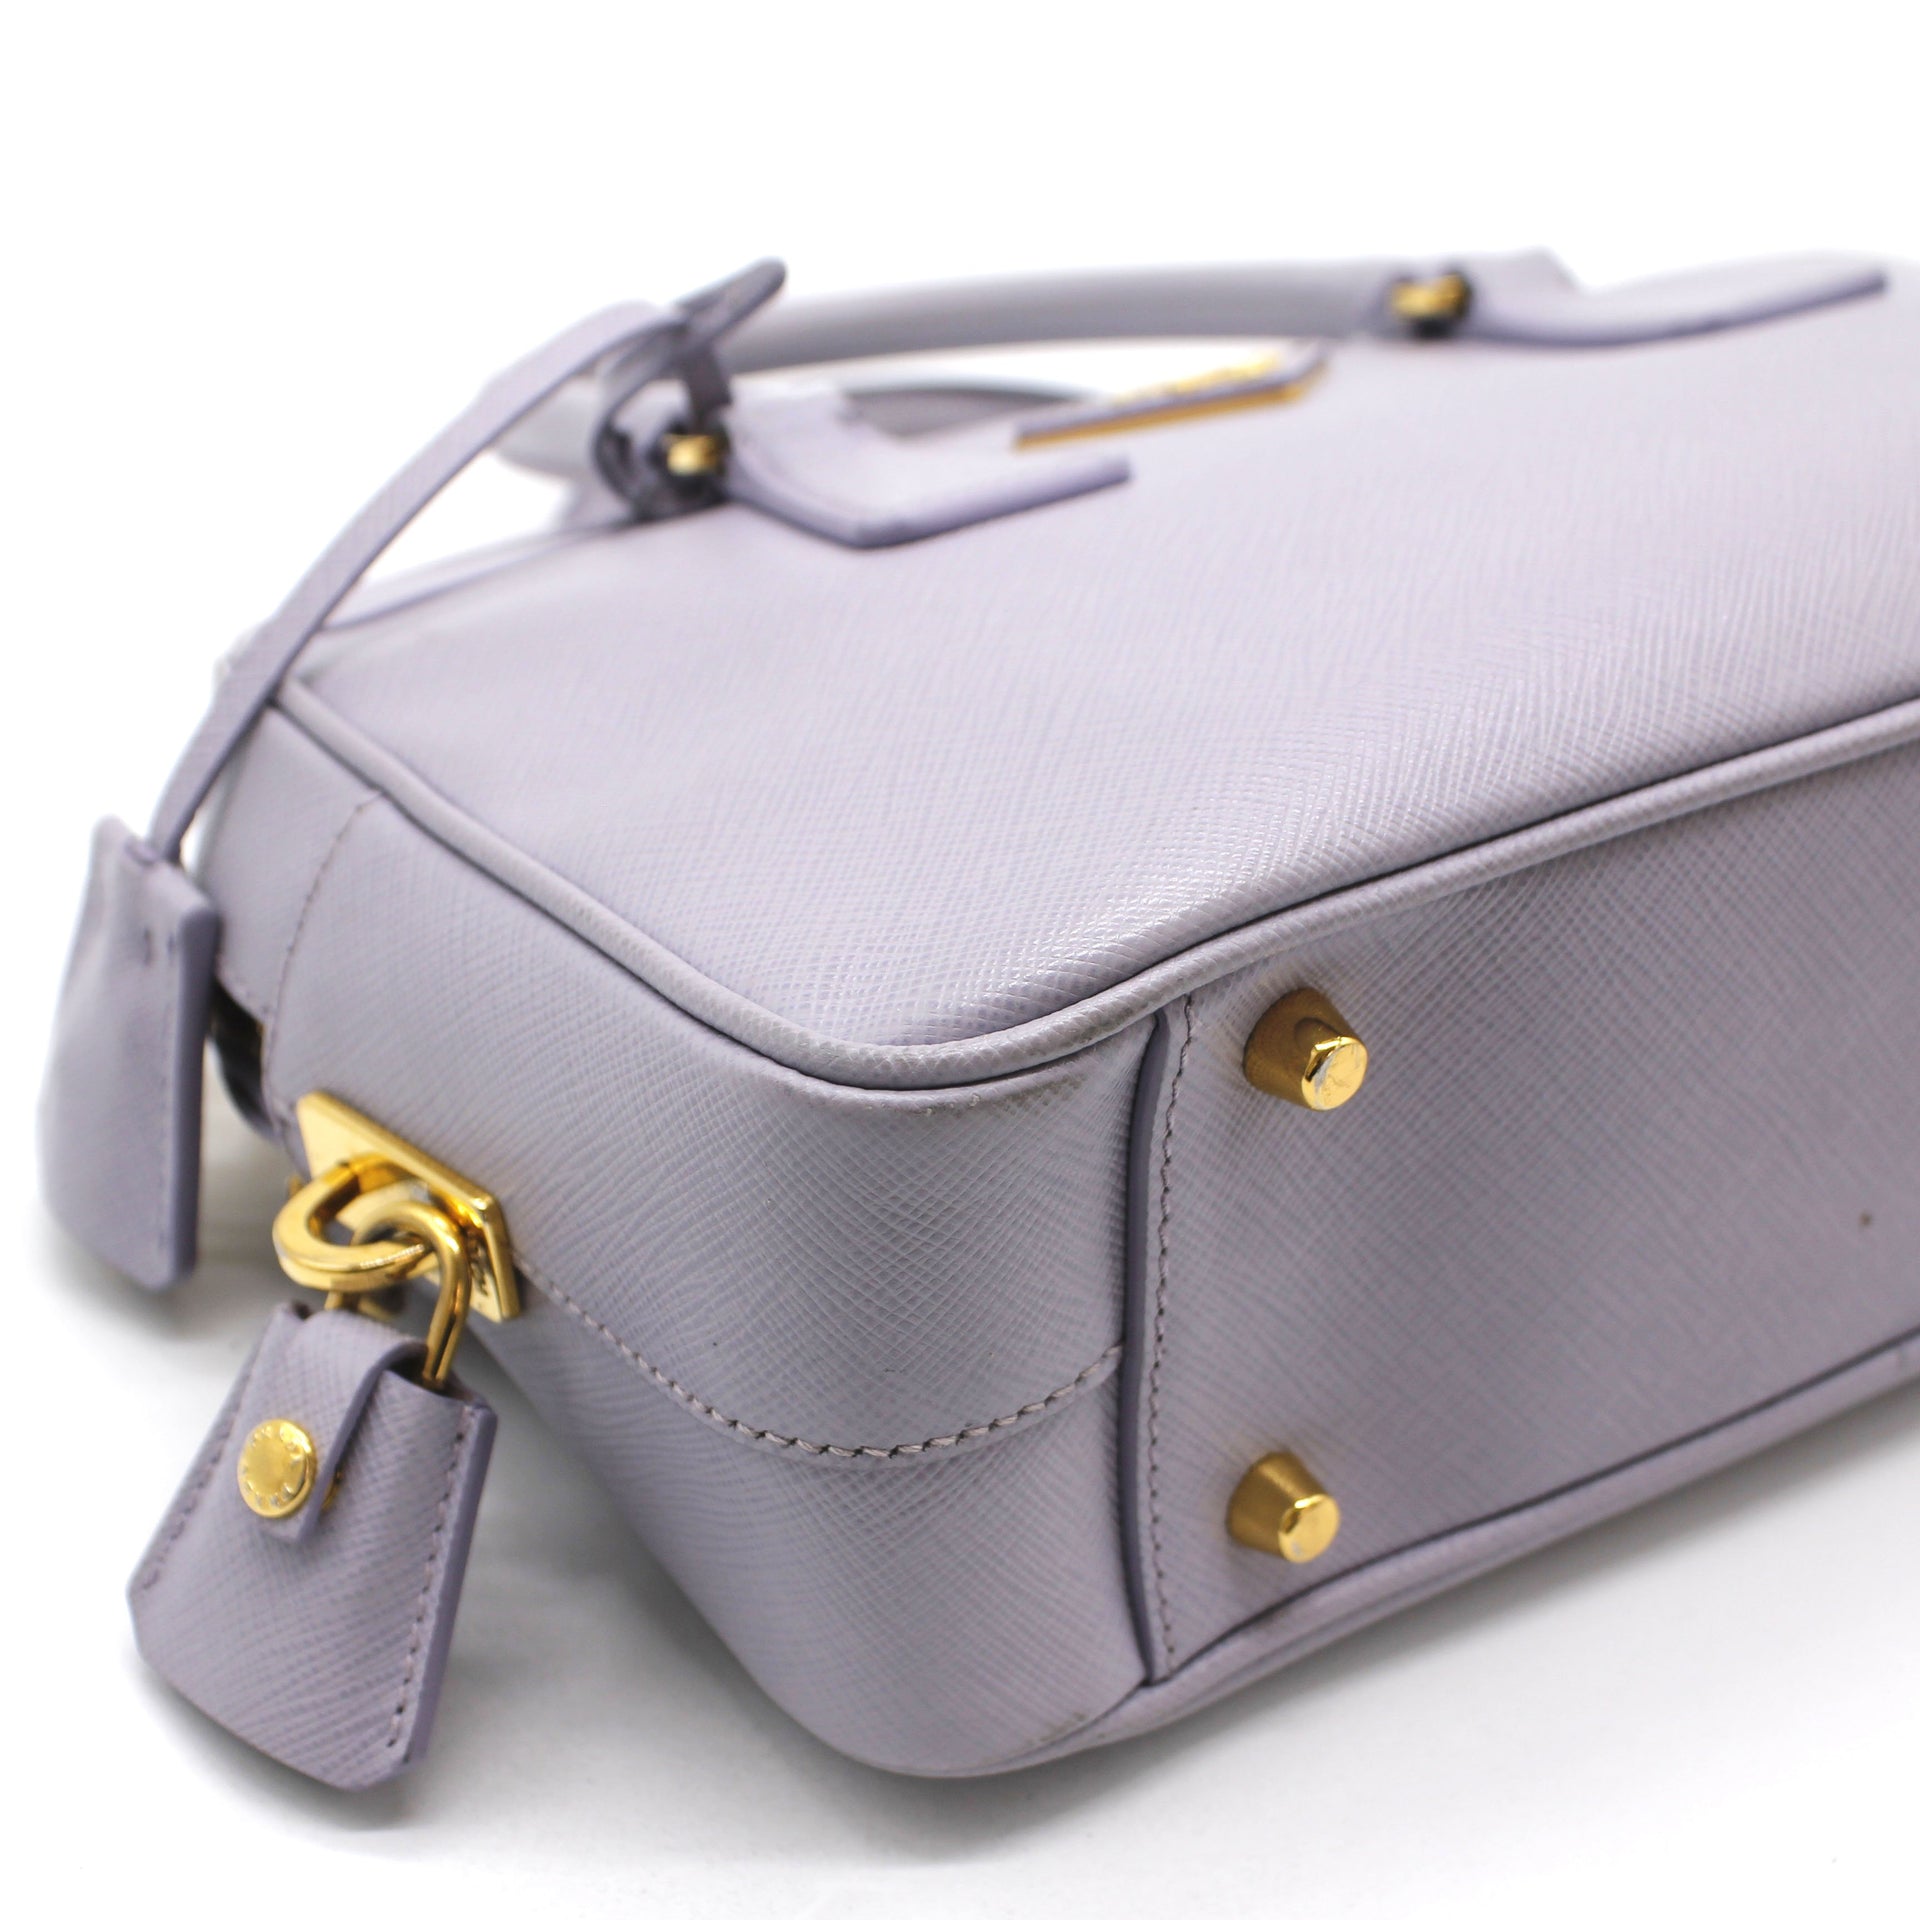 Lux Boston Saffiano Small Top Handle Bag